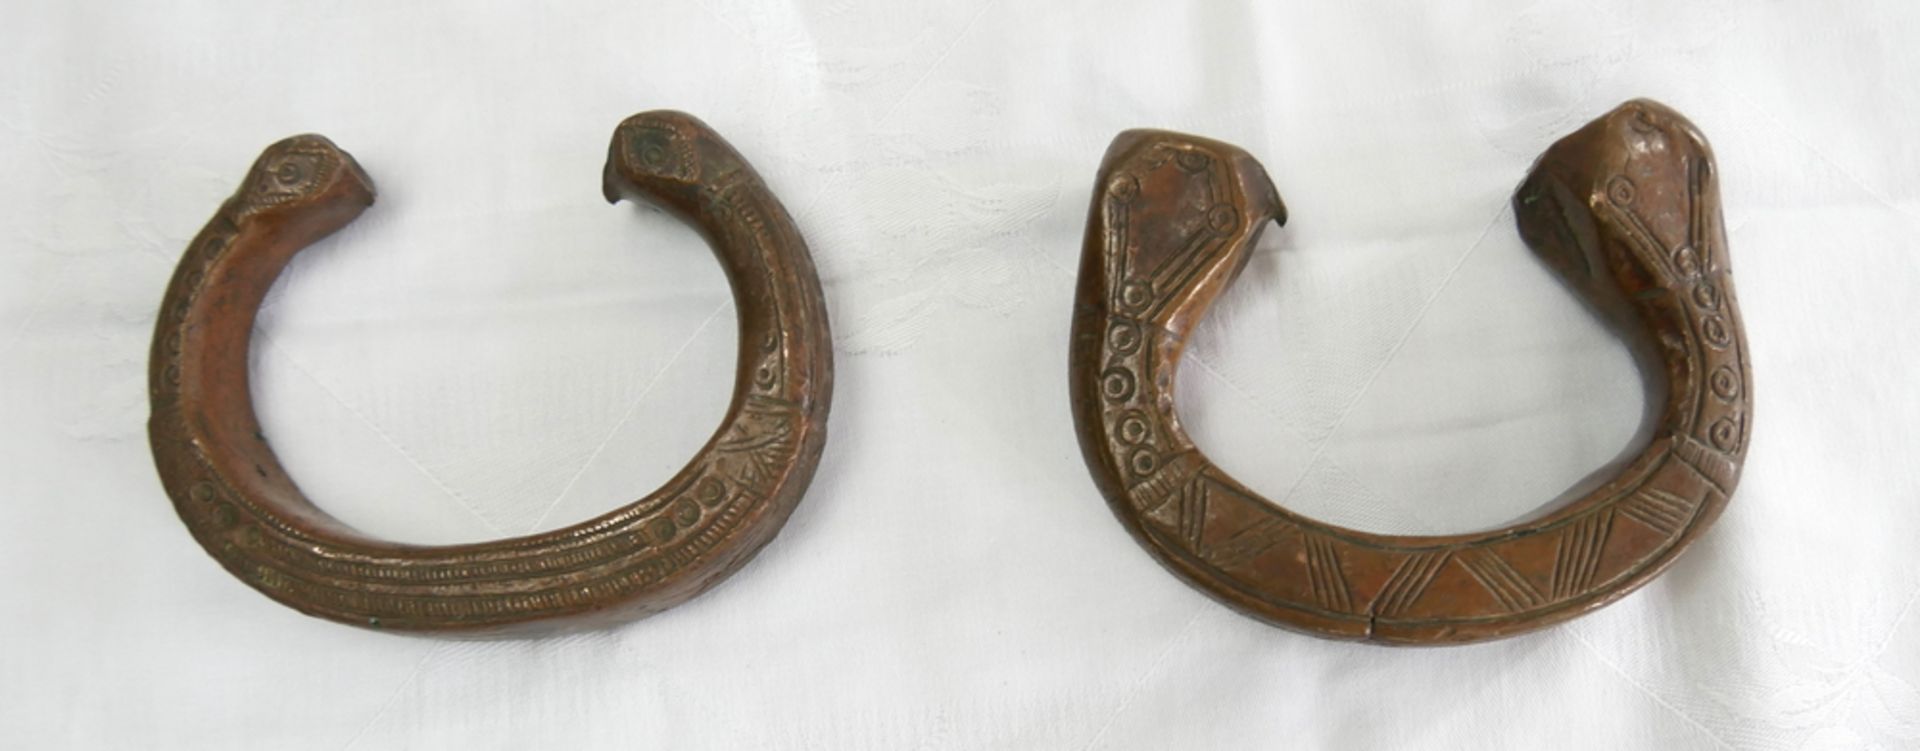 2 Manille sogenanntes Sklavengeld aus Bronze. In Form eines Armreifs mit einem Knauf auf beiden - Image 2 of 2